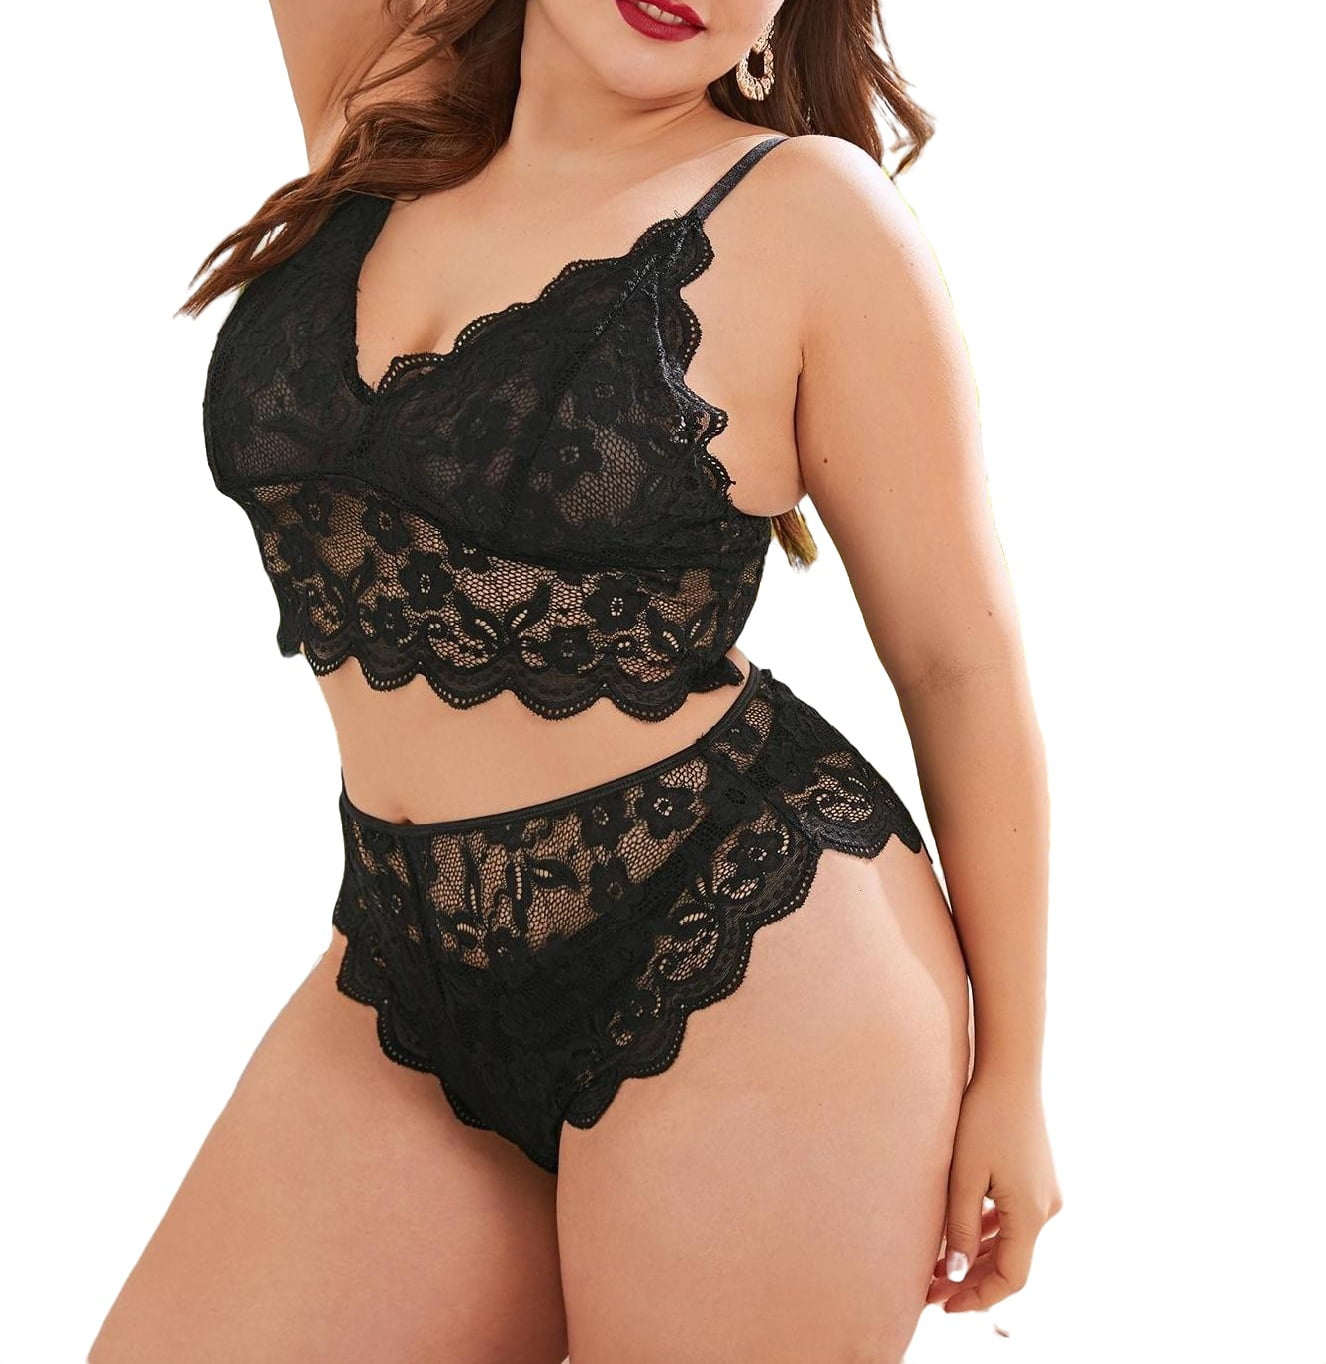 Sexy Black Plus Size Bra & Panty Sets (Women's)